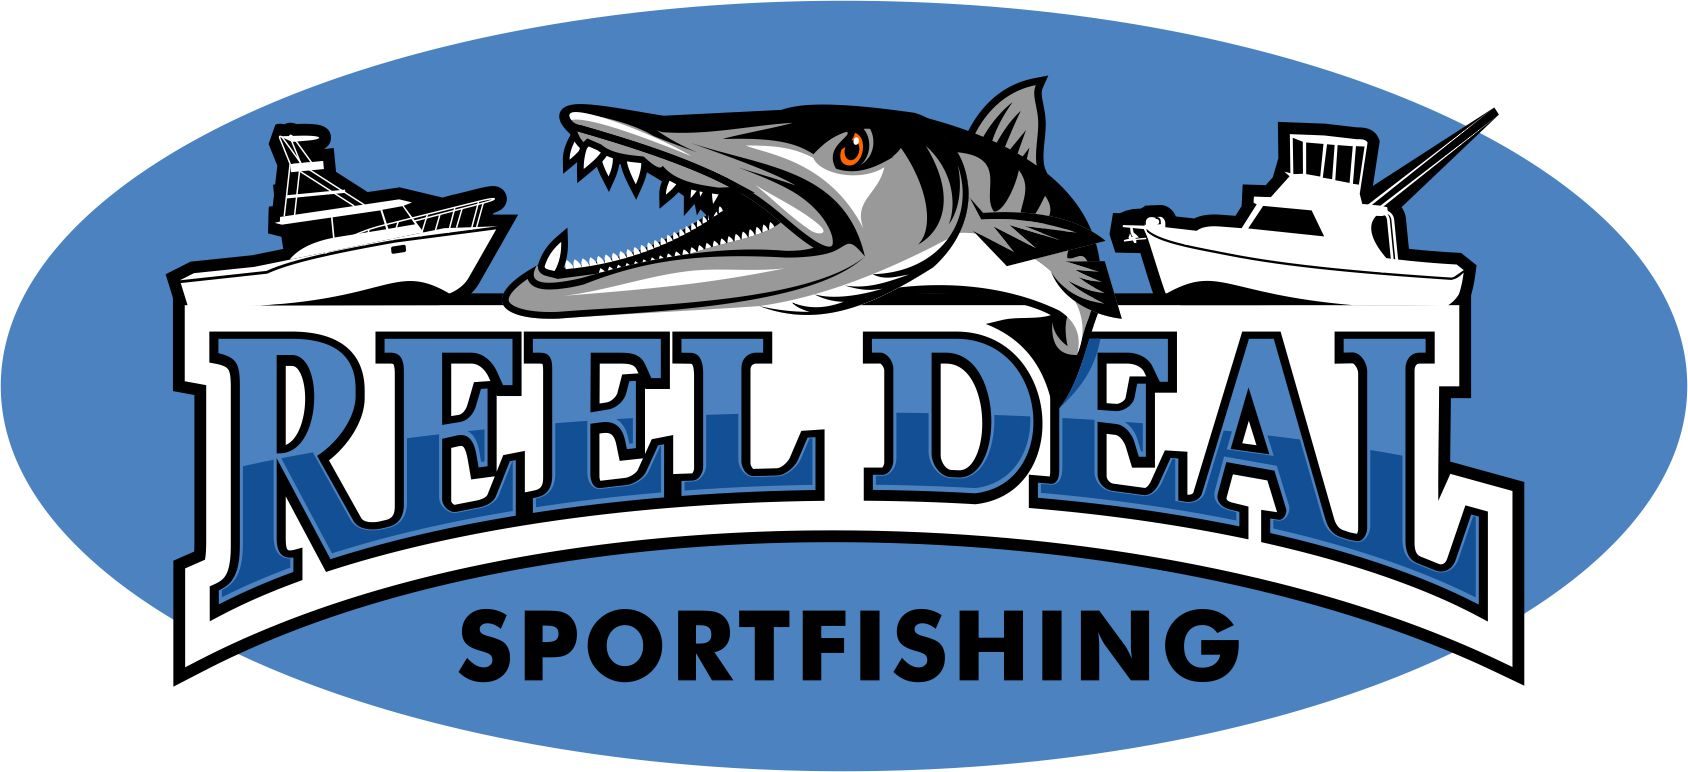 Reel Deal Sportfishing